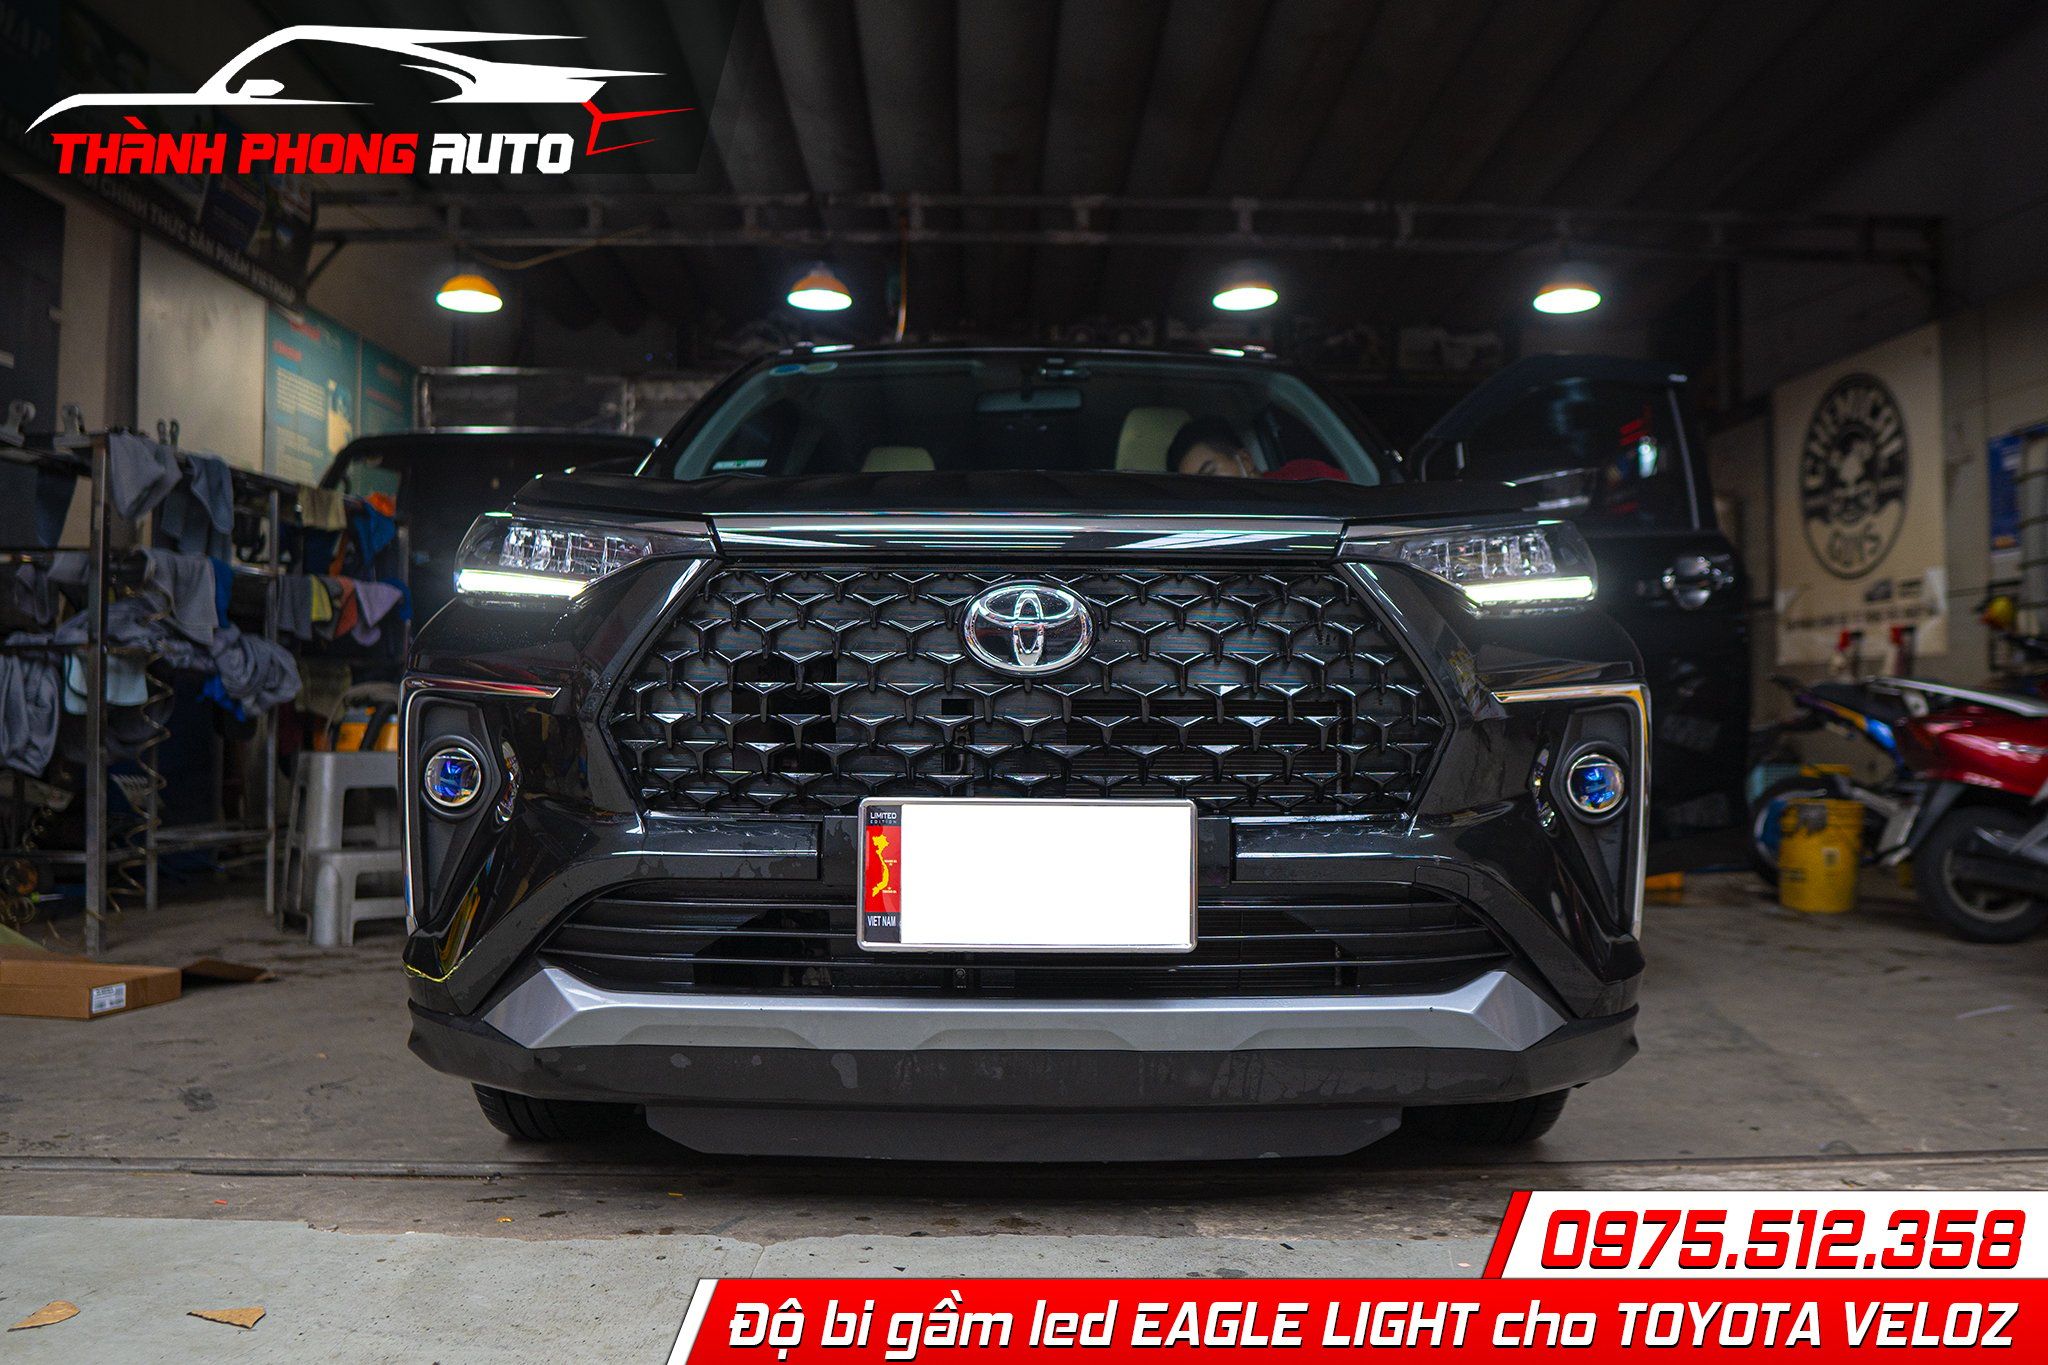  Độ đèn bi led gầm EAGLE LIGHT cho Toyota Veloz tại Tp HCM 